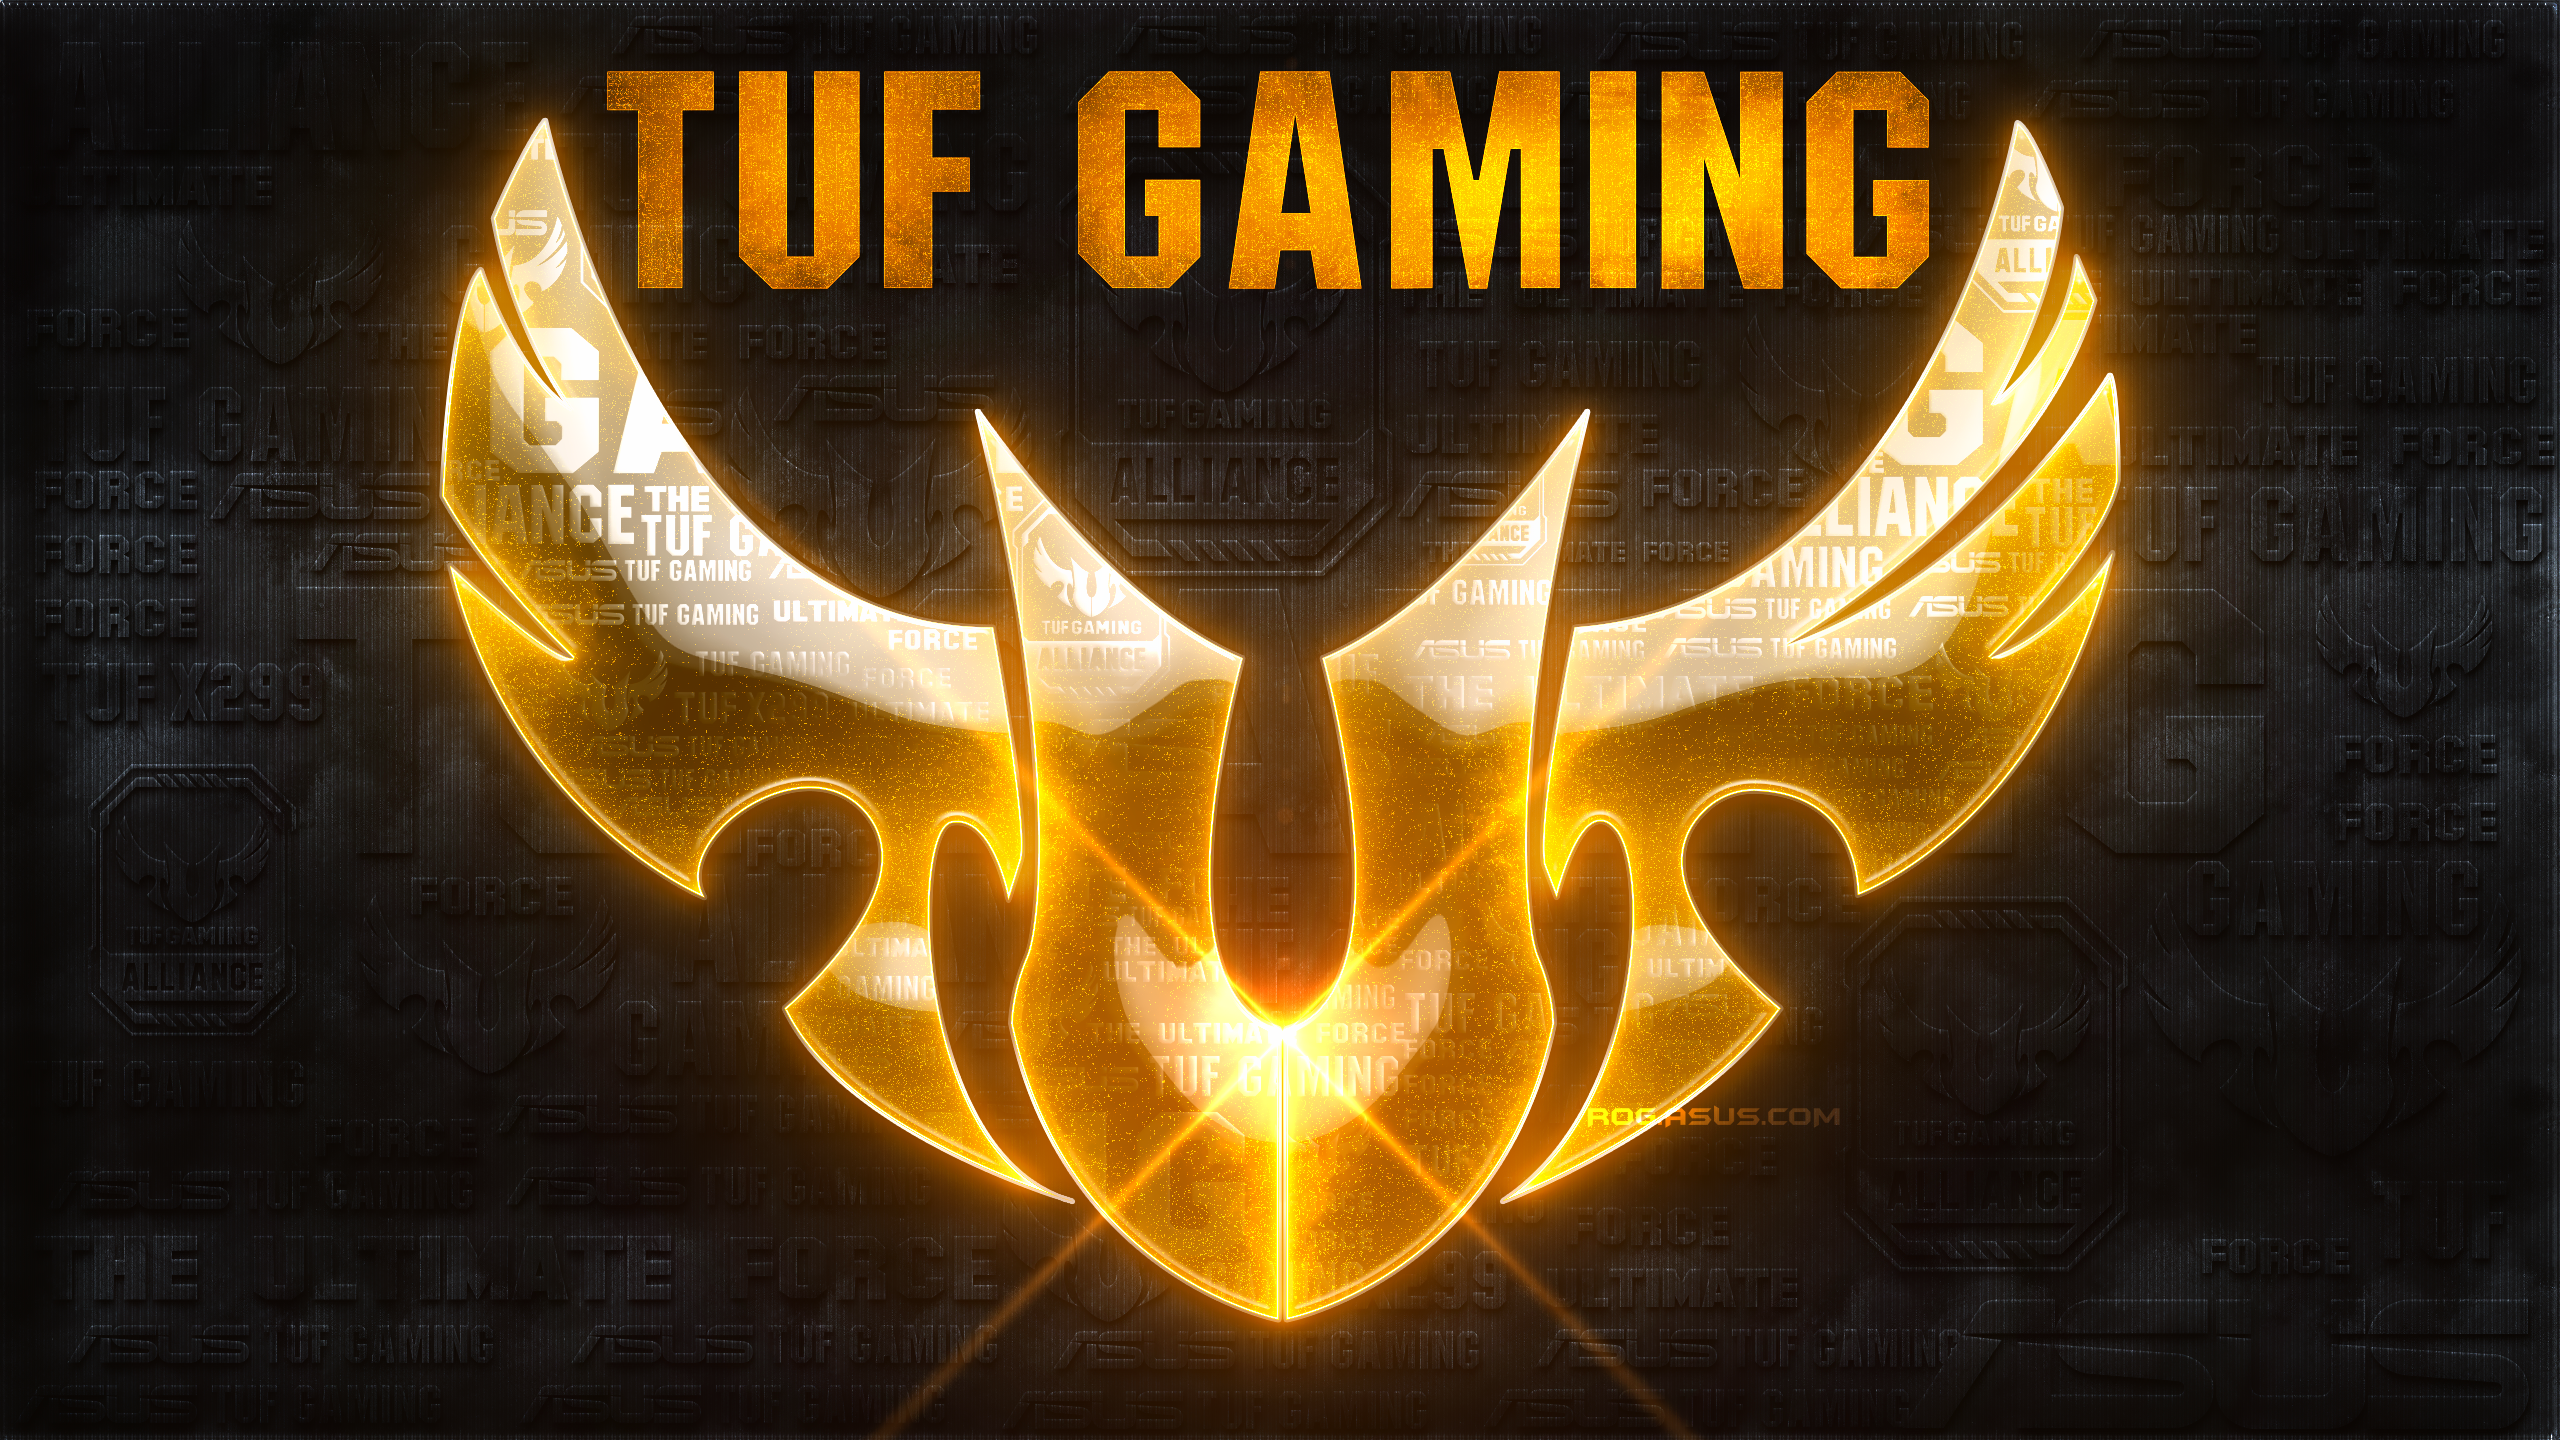 Asus Tuf Gaming Wallpaper 4k Download Обои Asus Tuf Gaming Fx505dy